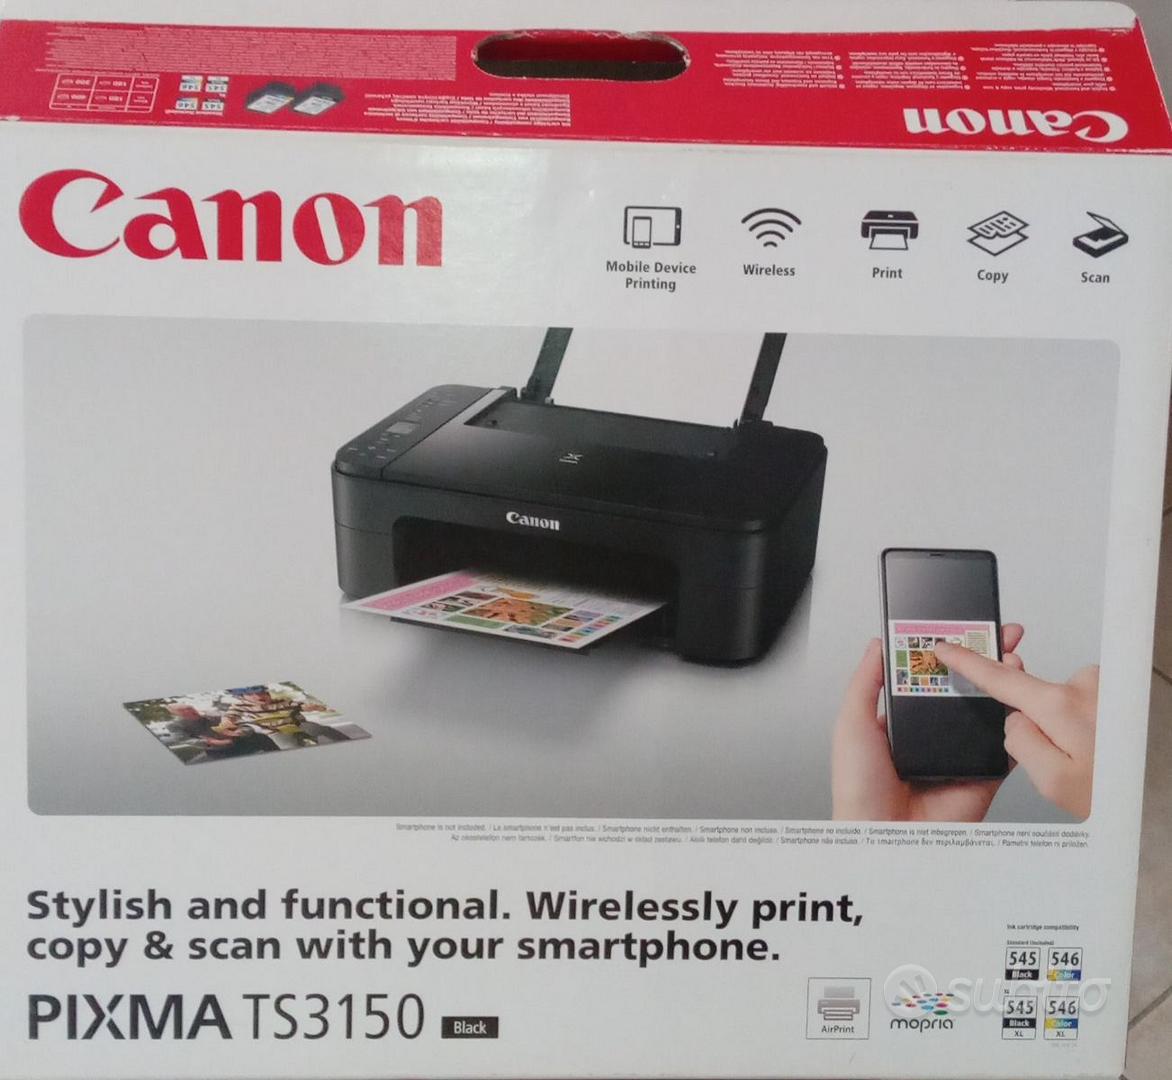 Stampante Canon usata pochissimo come nuova - Informatica In vendita a  Firenze